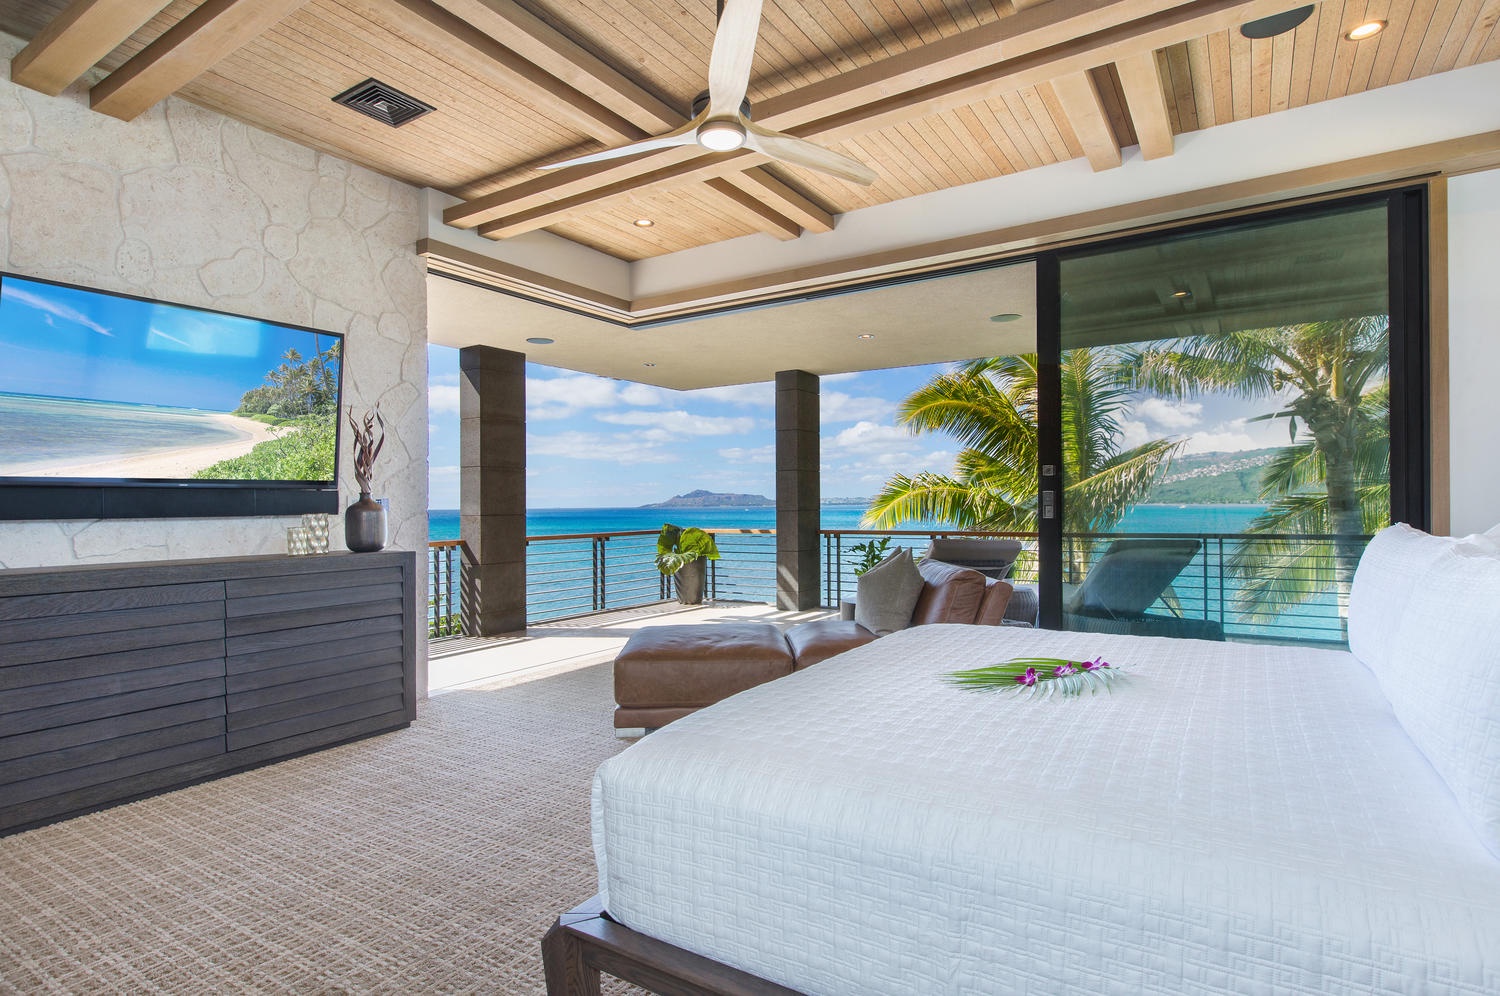 Honolulu Vacation Rentals, Ocean House 4 Bedroom - Primary bedroom views